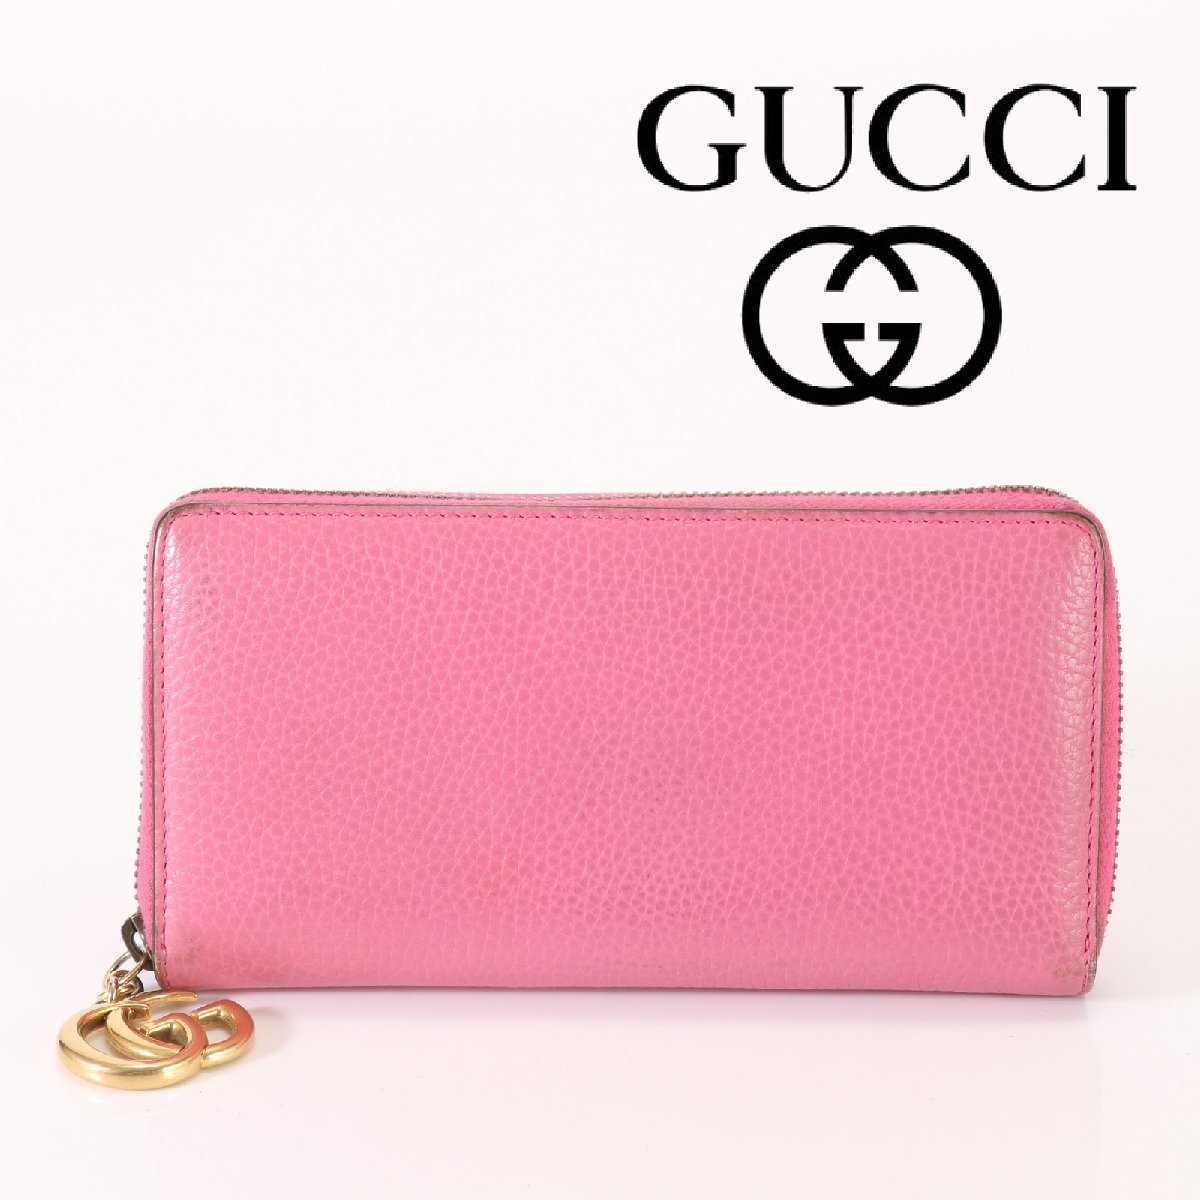 グッチ GUCCI 2つ折り財布 598587 - レザー ピンク 財布 ファッション ブランド別 服飾小物